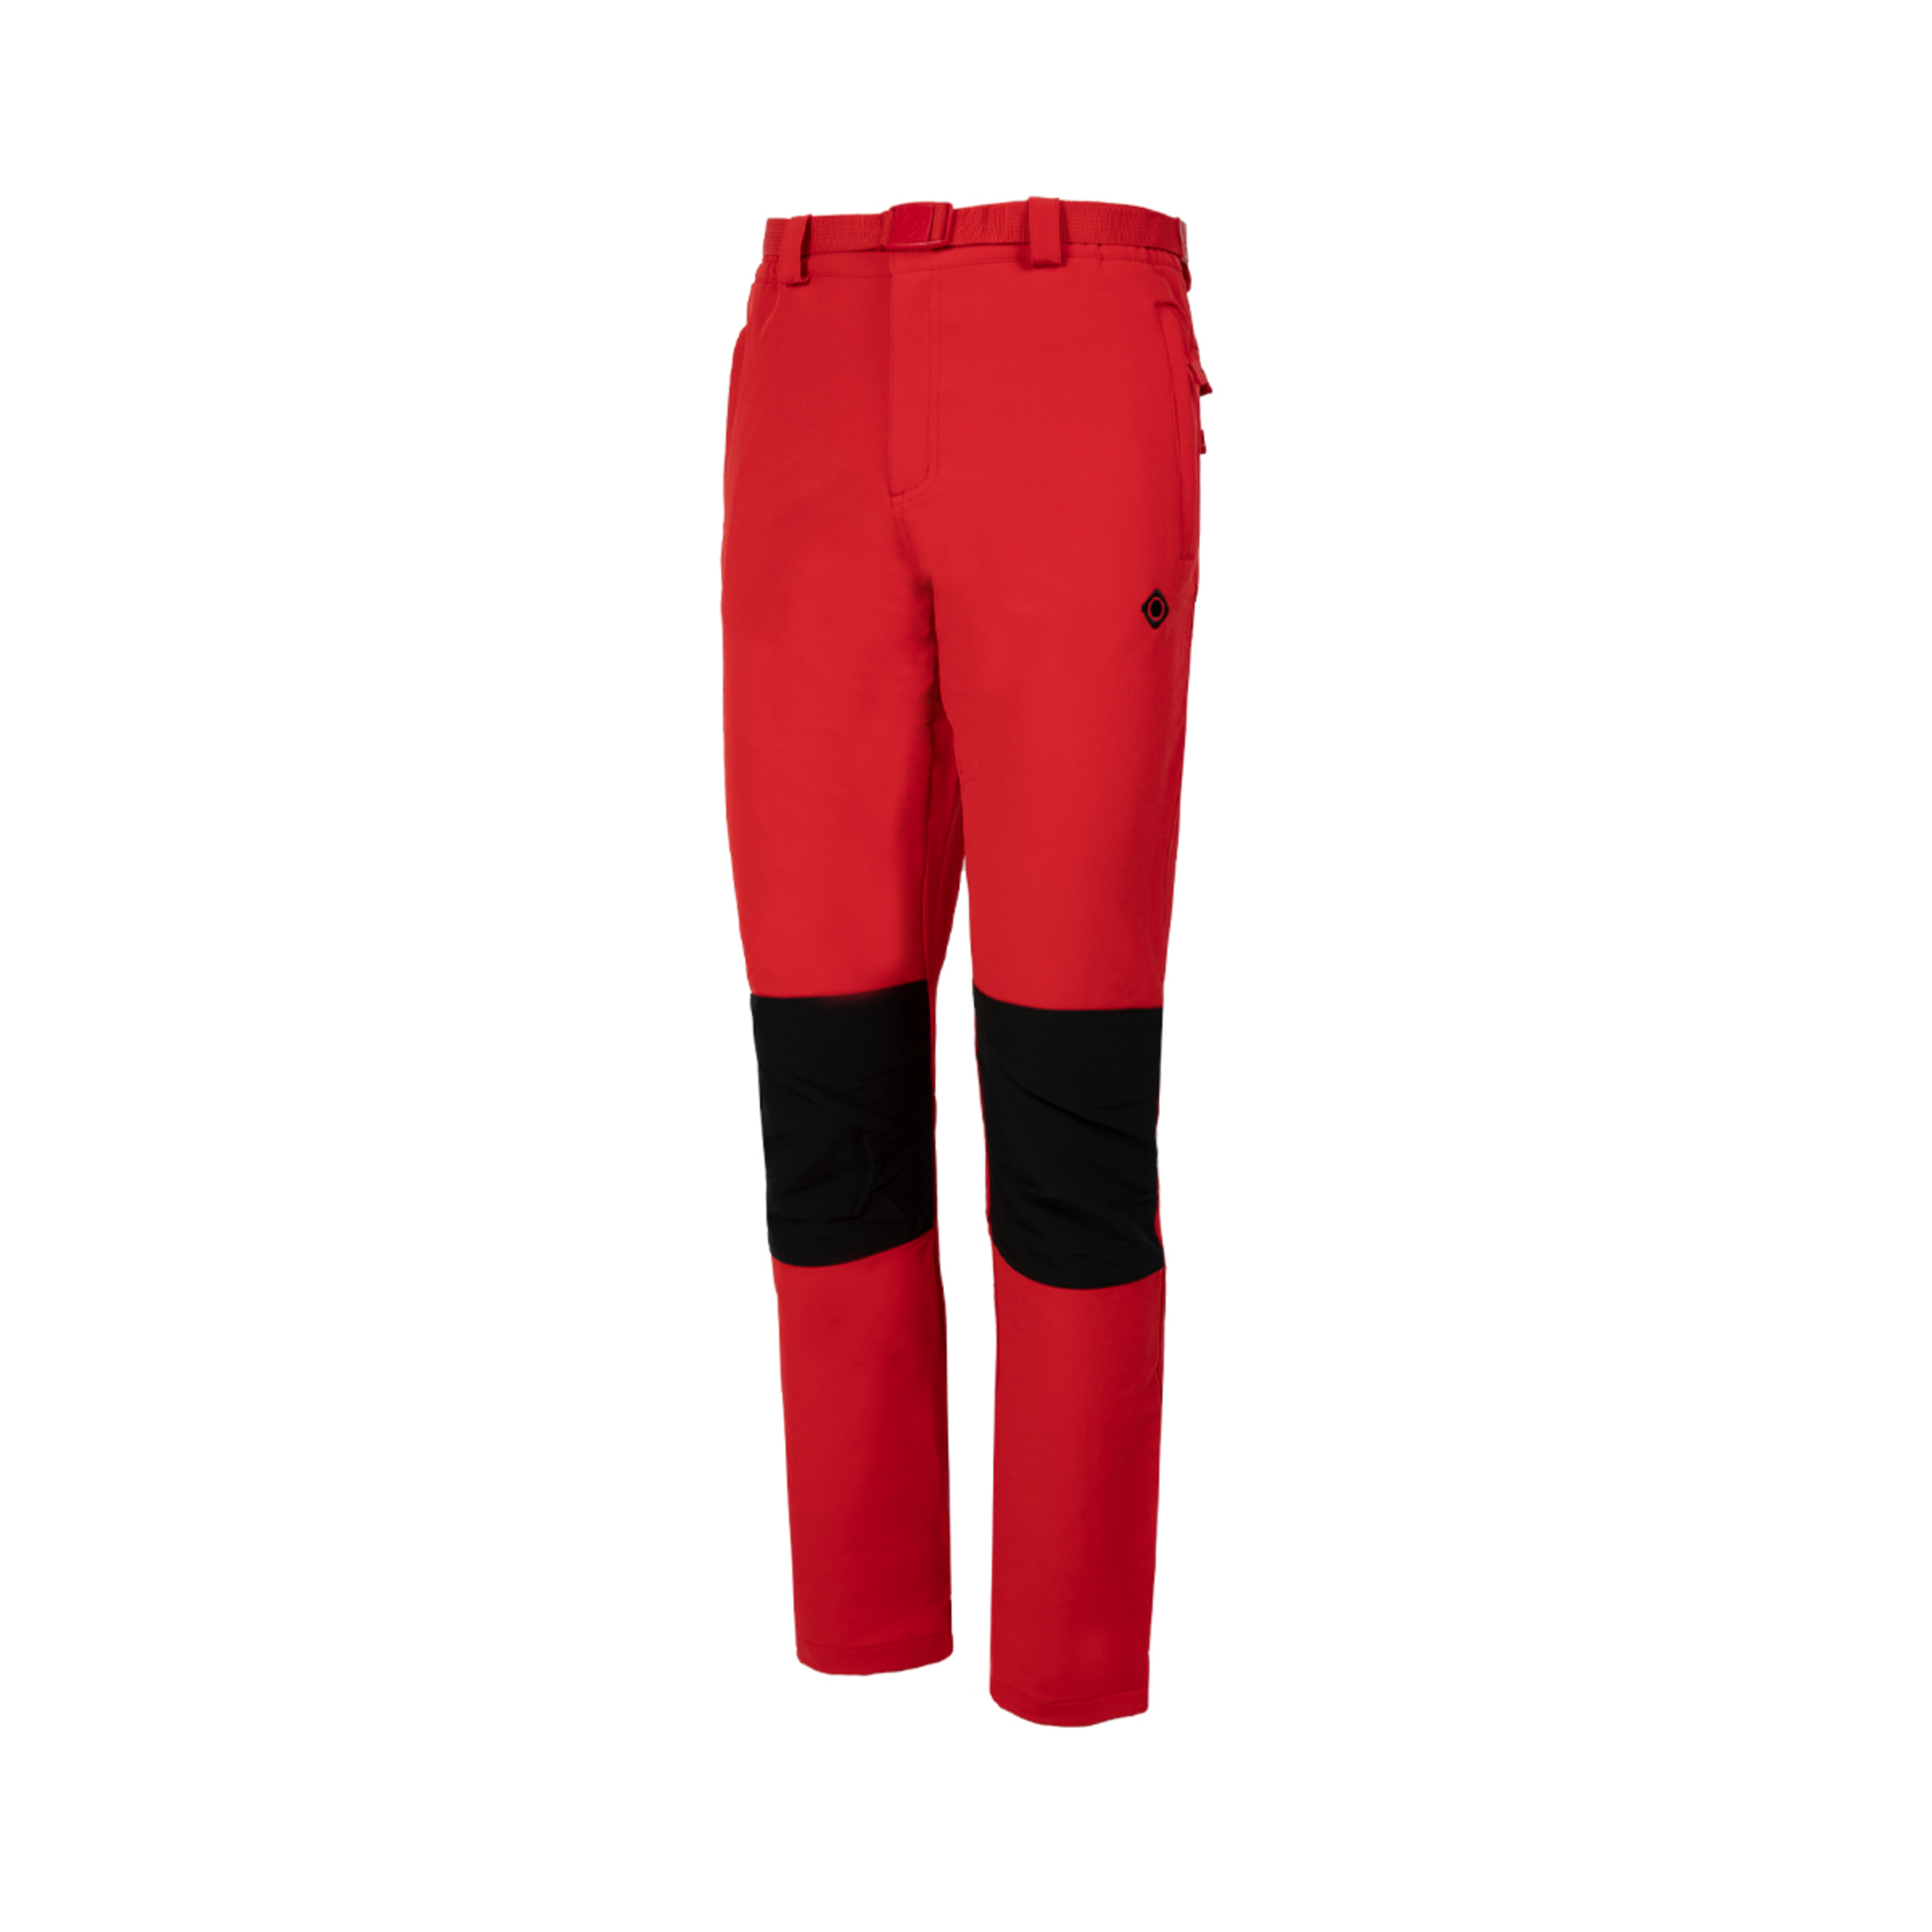 Pantalón De Montaña Con Tejido Más Grueso Para Climas En Invierno Izas Chamonix Co - rojo-negro - 